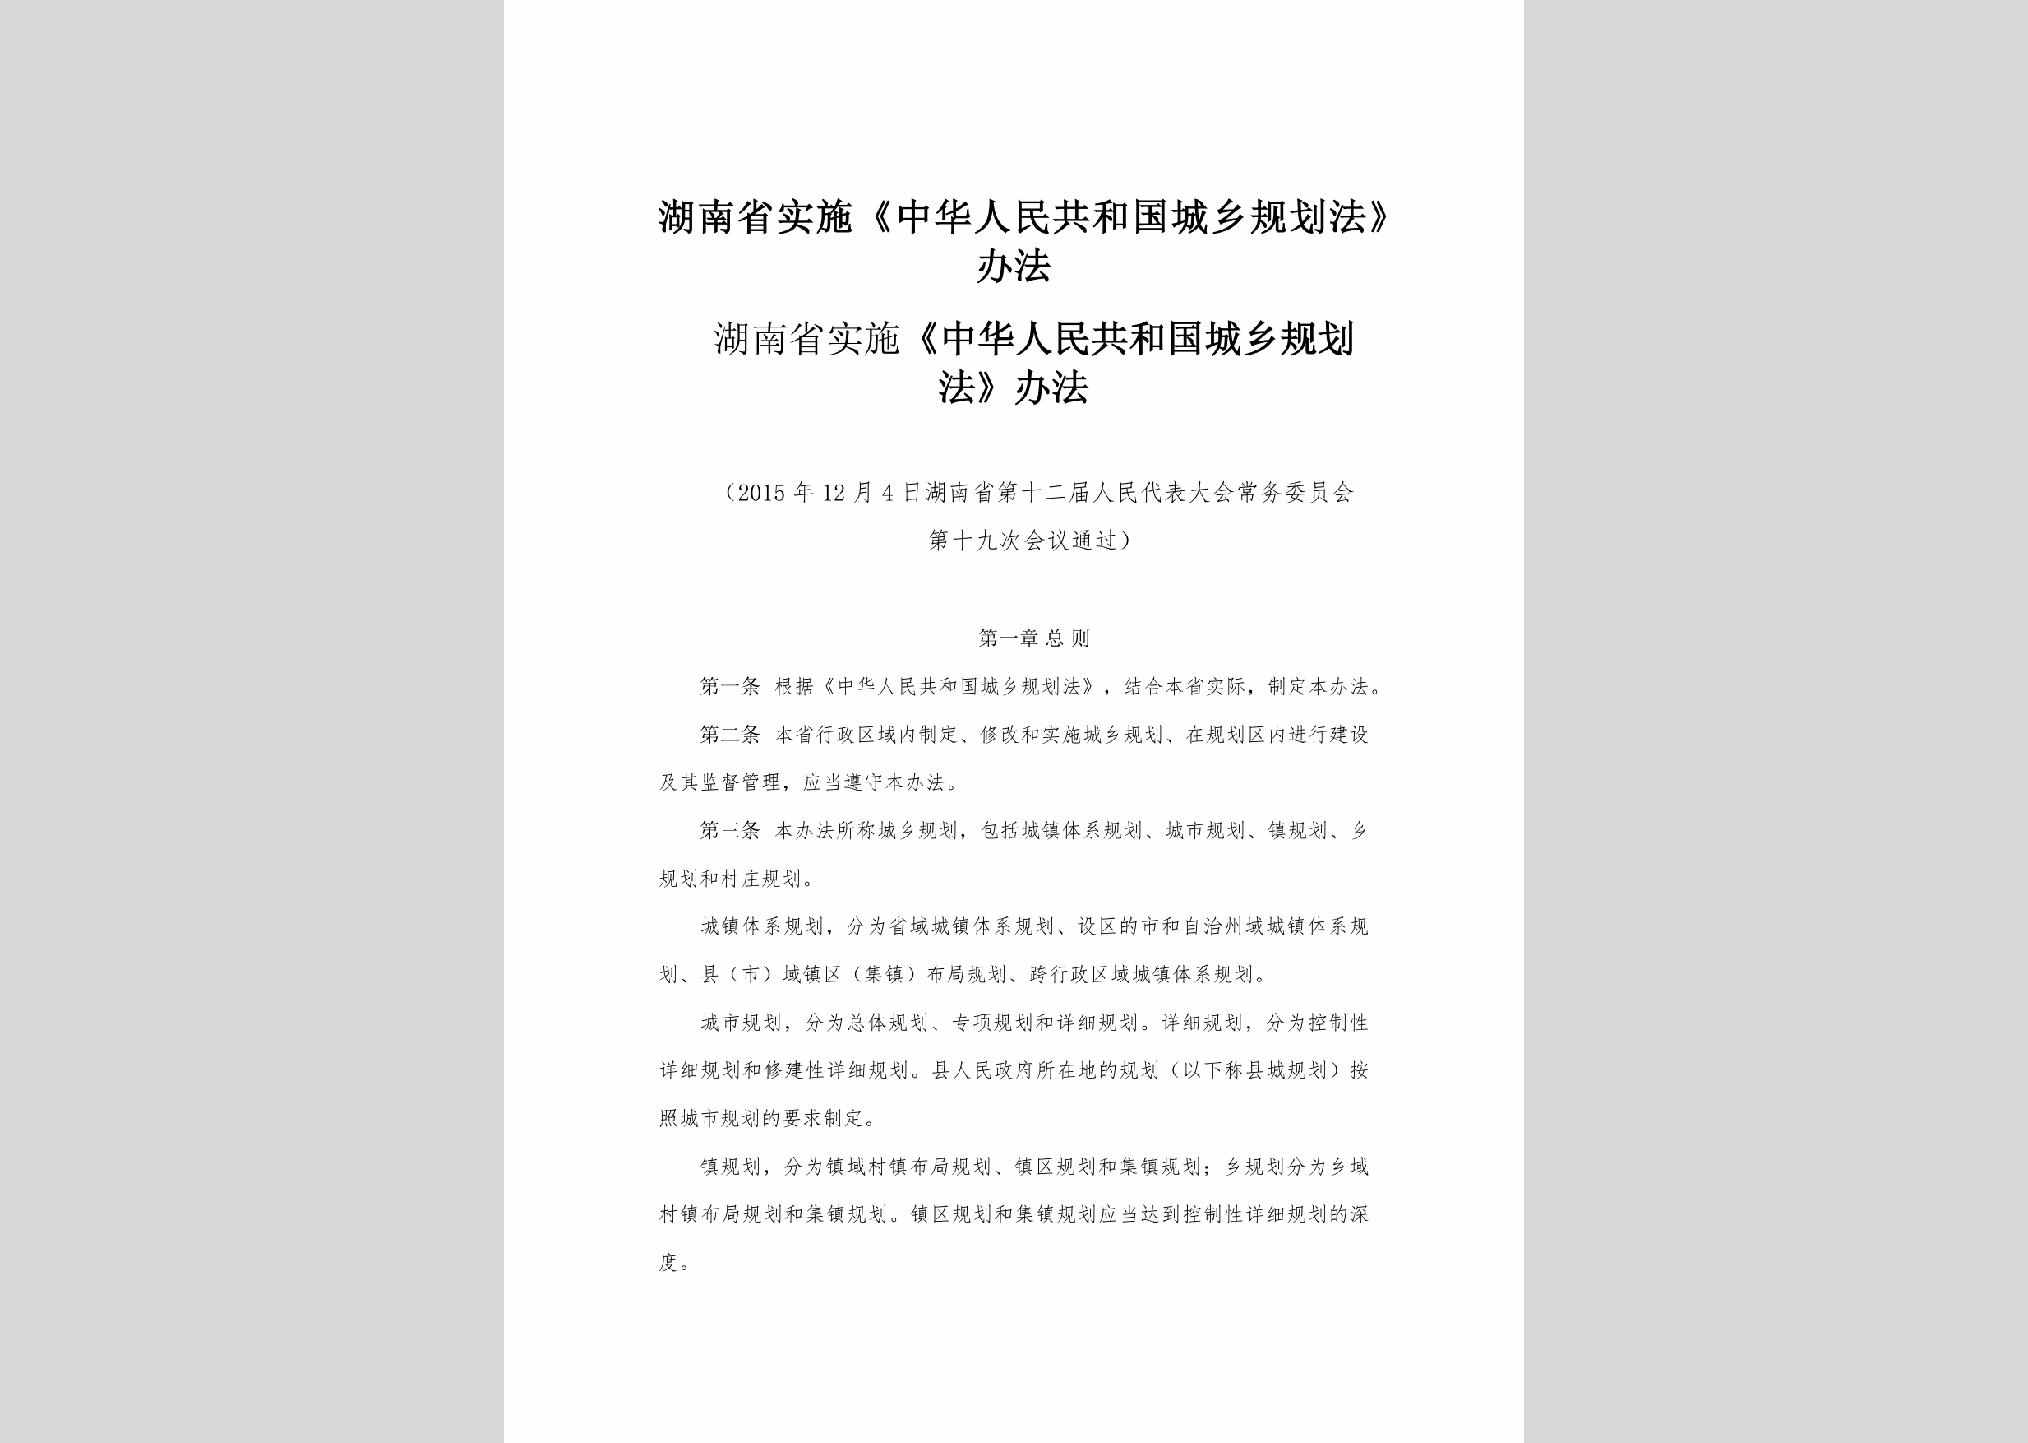 HUN-SSCXGHF-2016：湖南省实施《中华人民共和国城乡规划法》办法